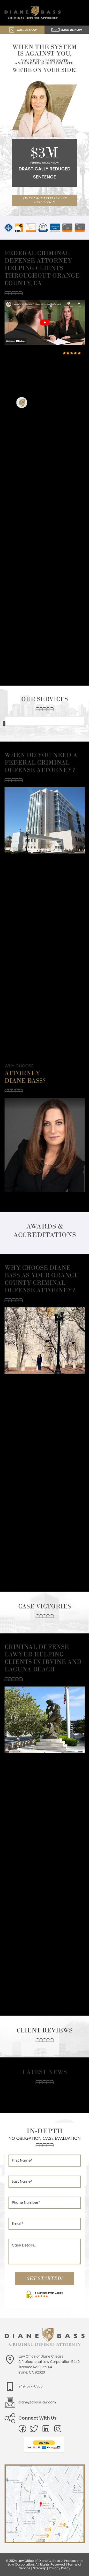 Diane Bass - Irvine CA Lawyers